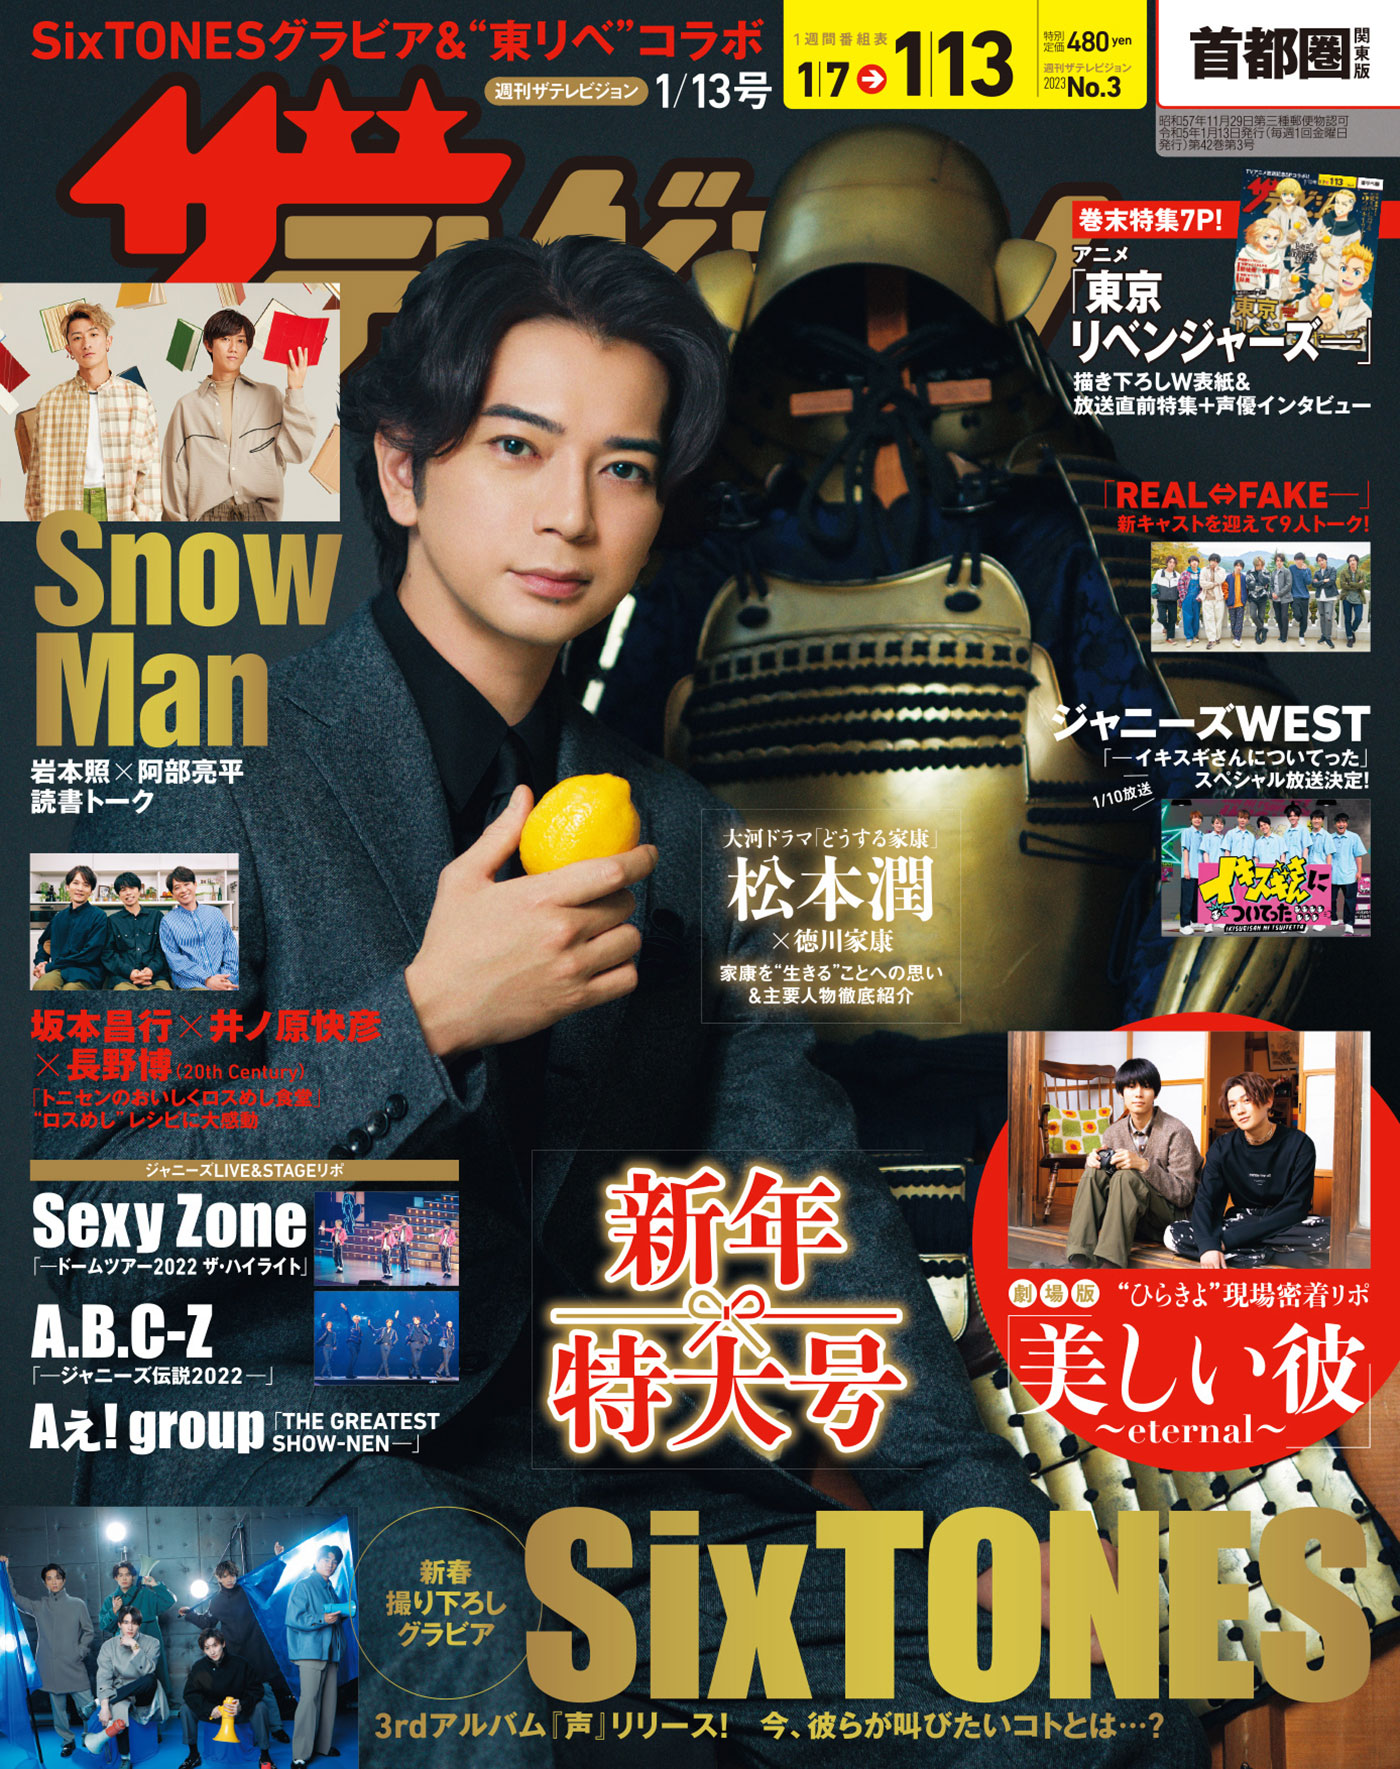 松本潤が『どうする家康』の甲冑と共に表紙を飾る『週刊ザテレビジョン』、SixTONESのグラビアも掲載